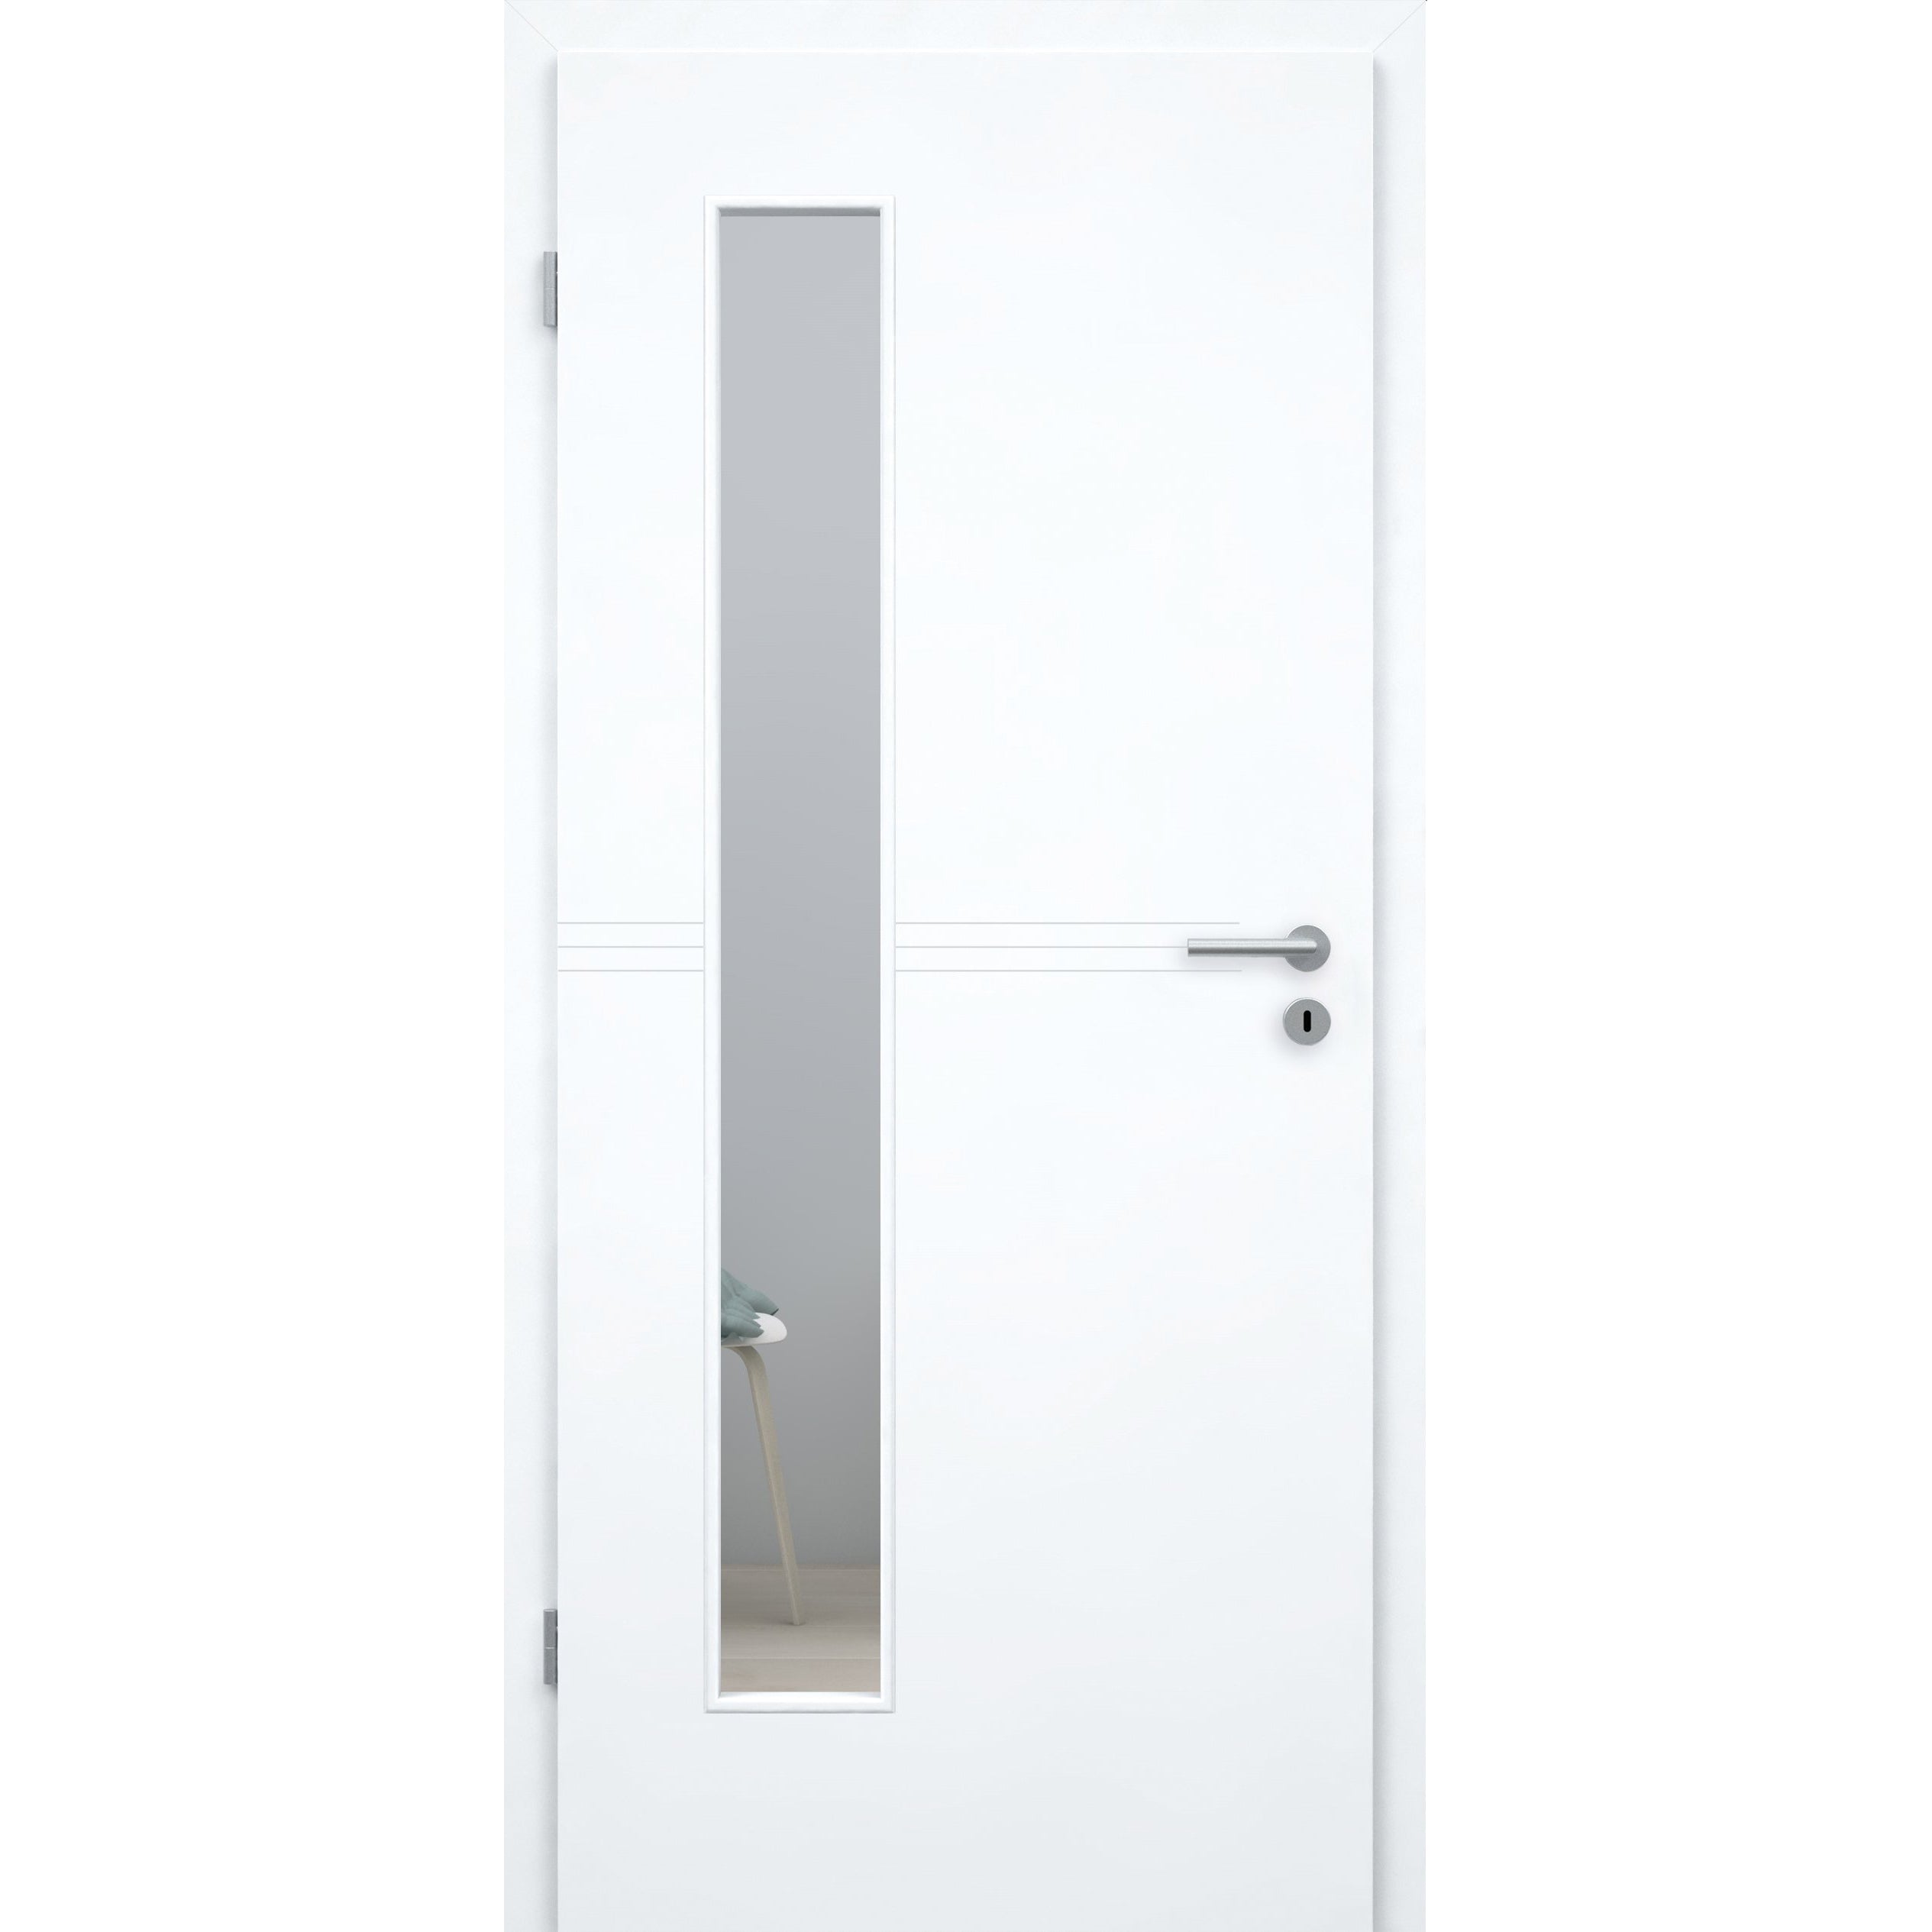 Zimmertür mit Lichtausschnitt brillant-weiß 3 Rillen Designkante - Modell Designtür Q33LAB